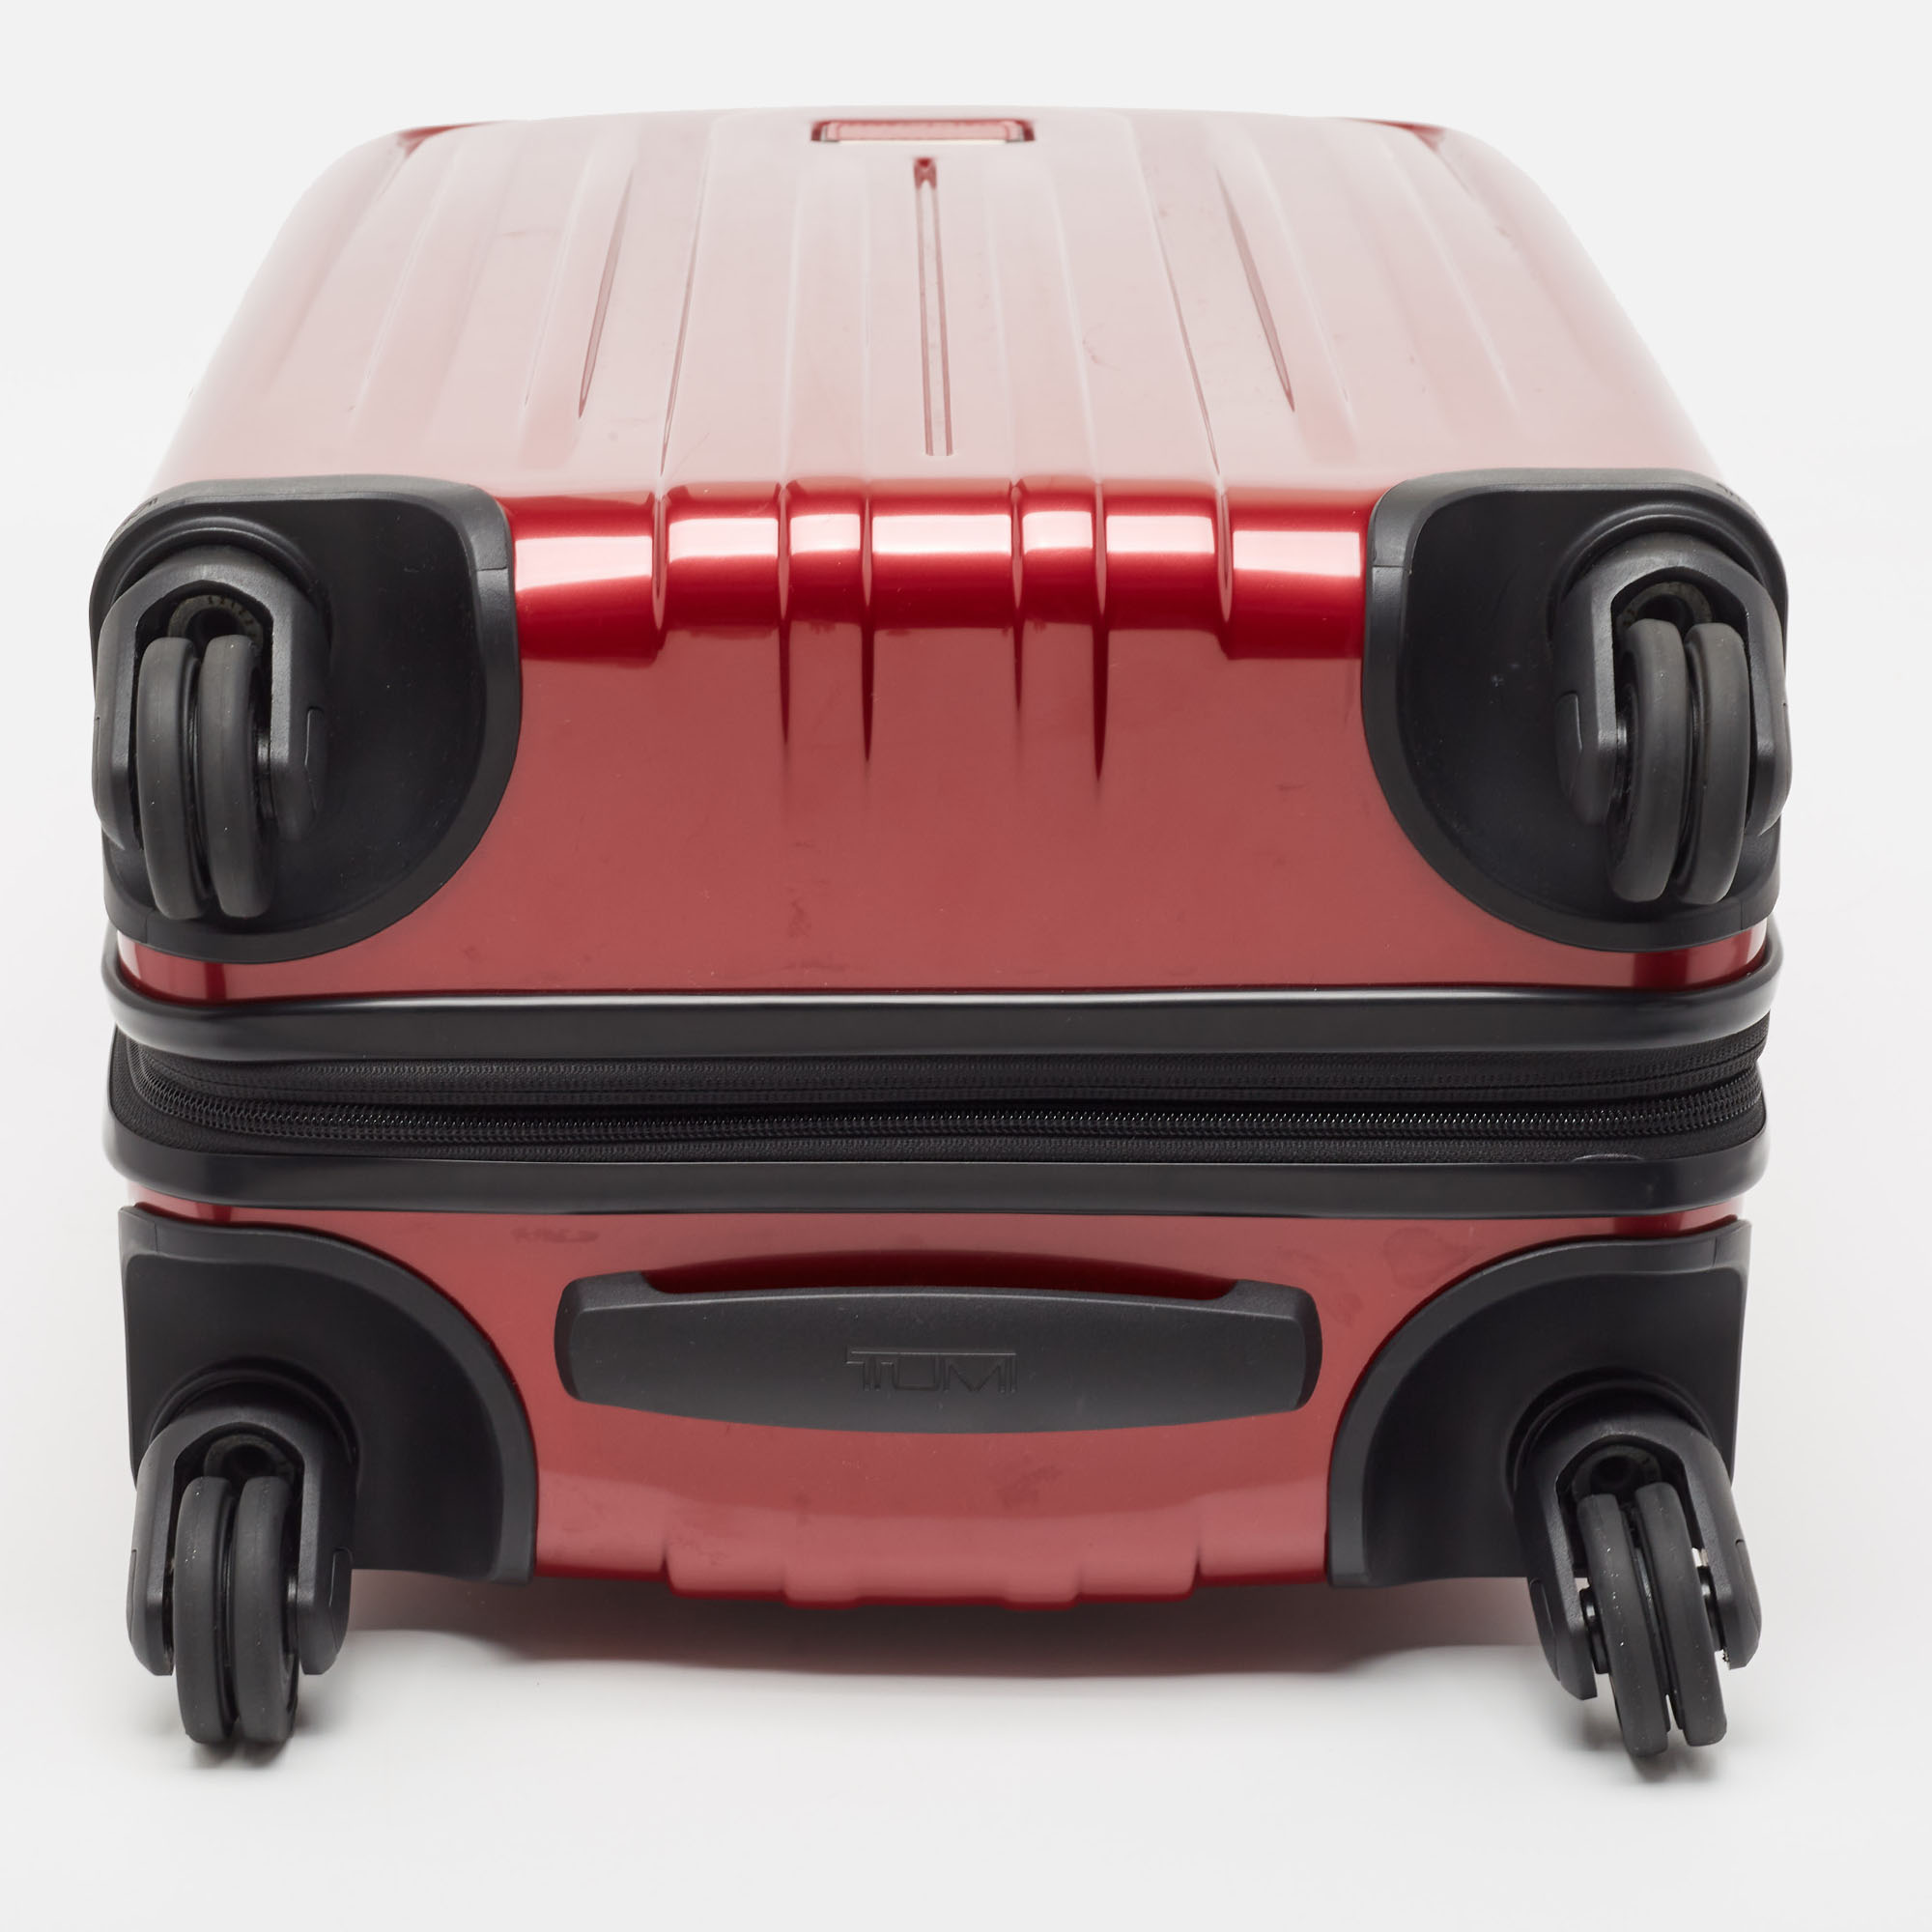 TUMI Red 4 Wheeled V4 International Expandable Carry On Luggage